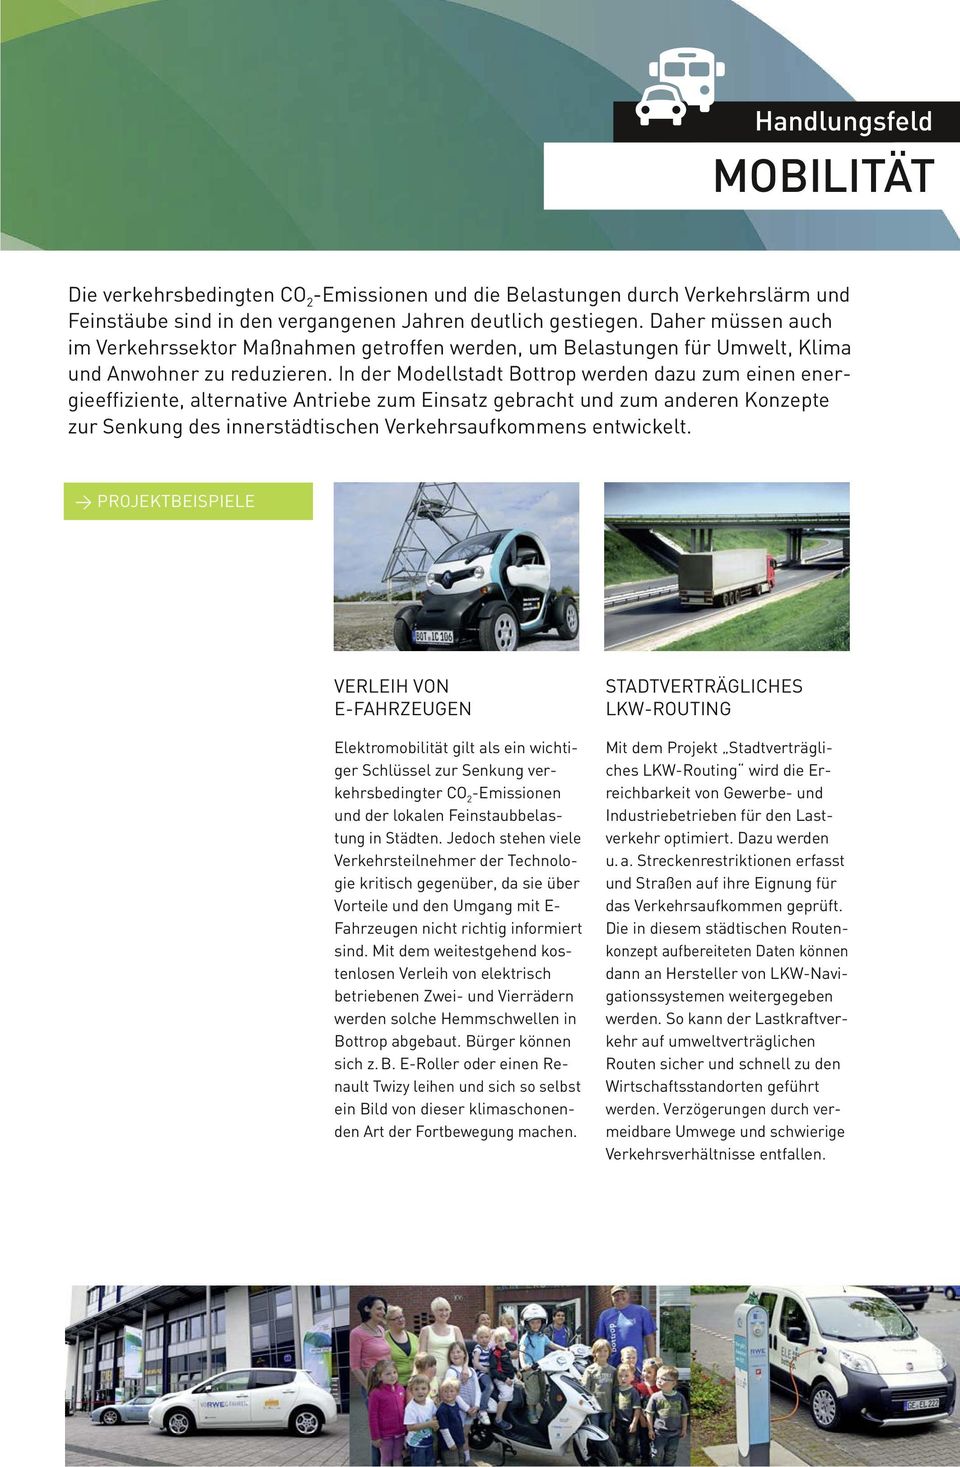 In der Modellstadt Bottrop werden dazu zum einen energieeffiziente, alternative Antriebe zum Einsatz gebracht und zum anderen Konzepte zur Senkung des innerstädtischen Verkehrsaufkommens entwickelt.